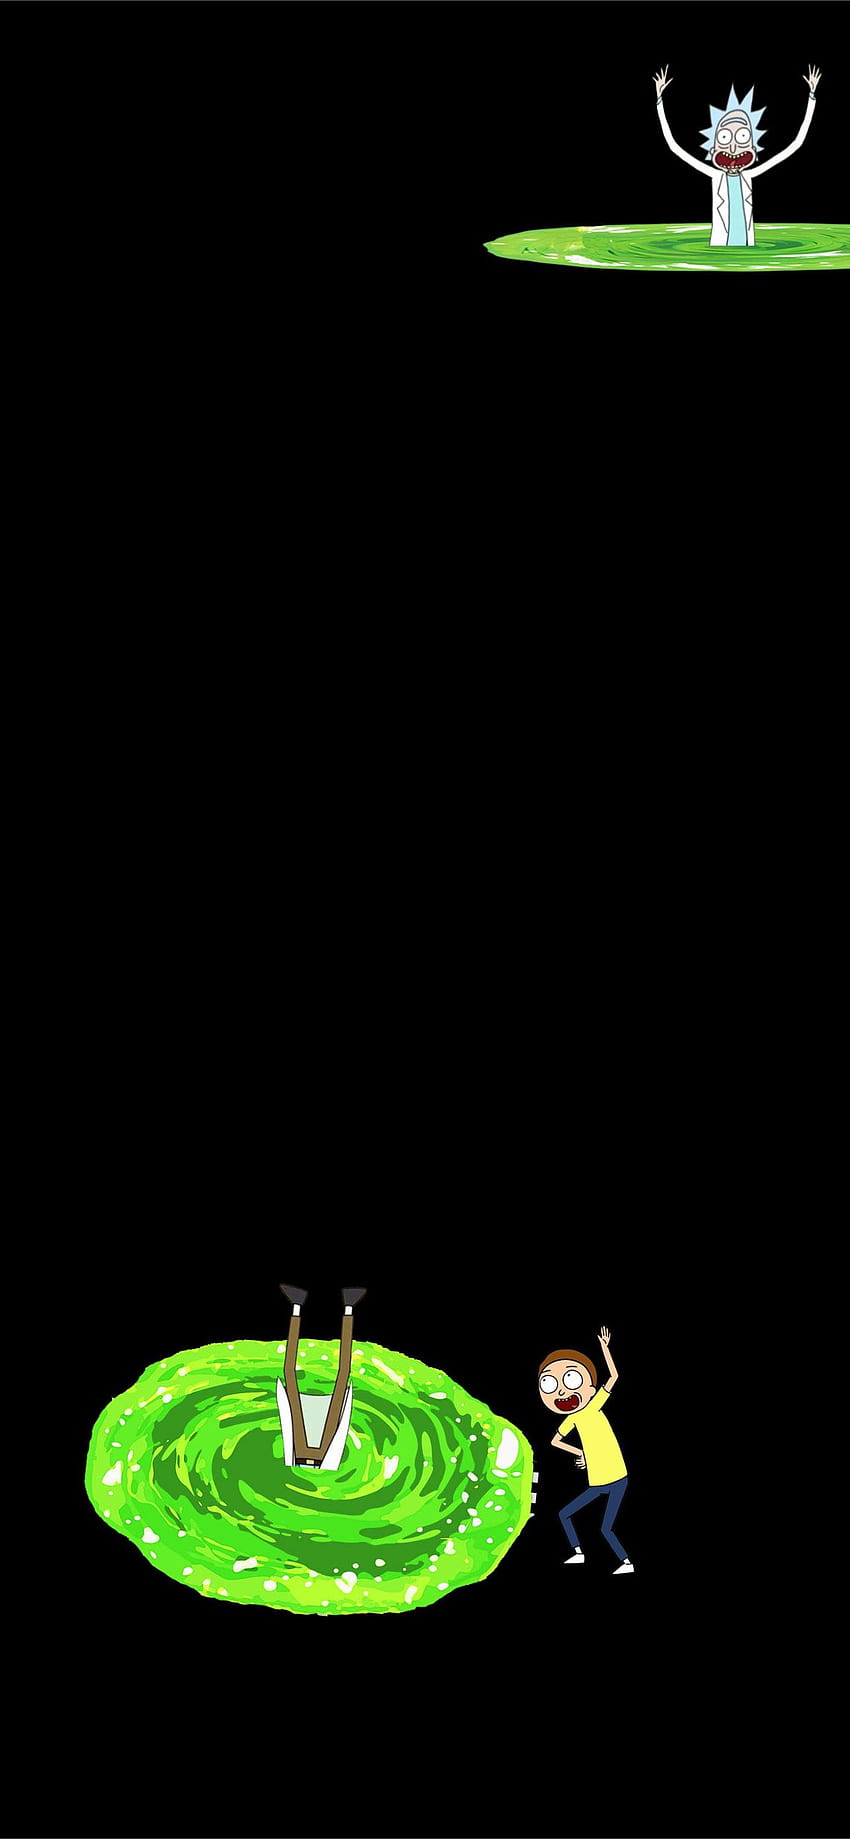 Rick and Morty Portal 2 by ScubaRJ Galaxy S10... iPhone, リック アンド モーティ ポータル iphone HD電話の壁紙